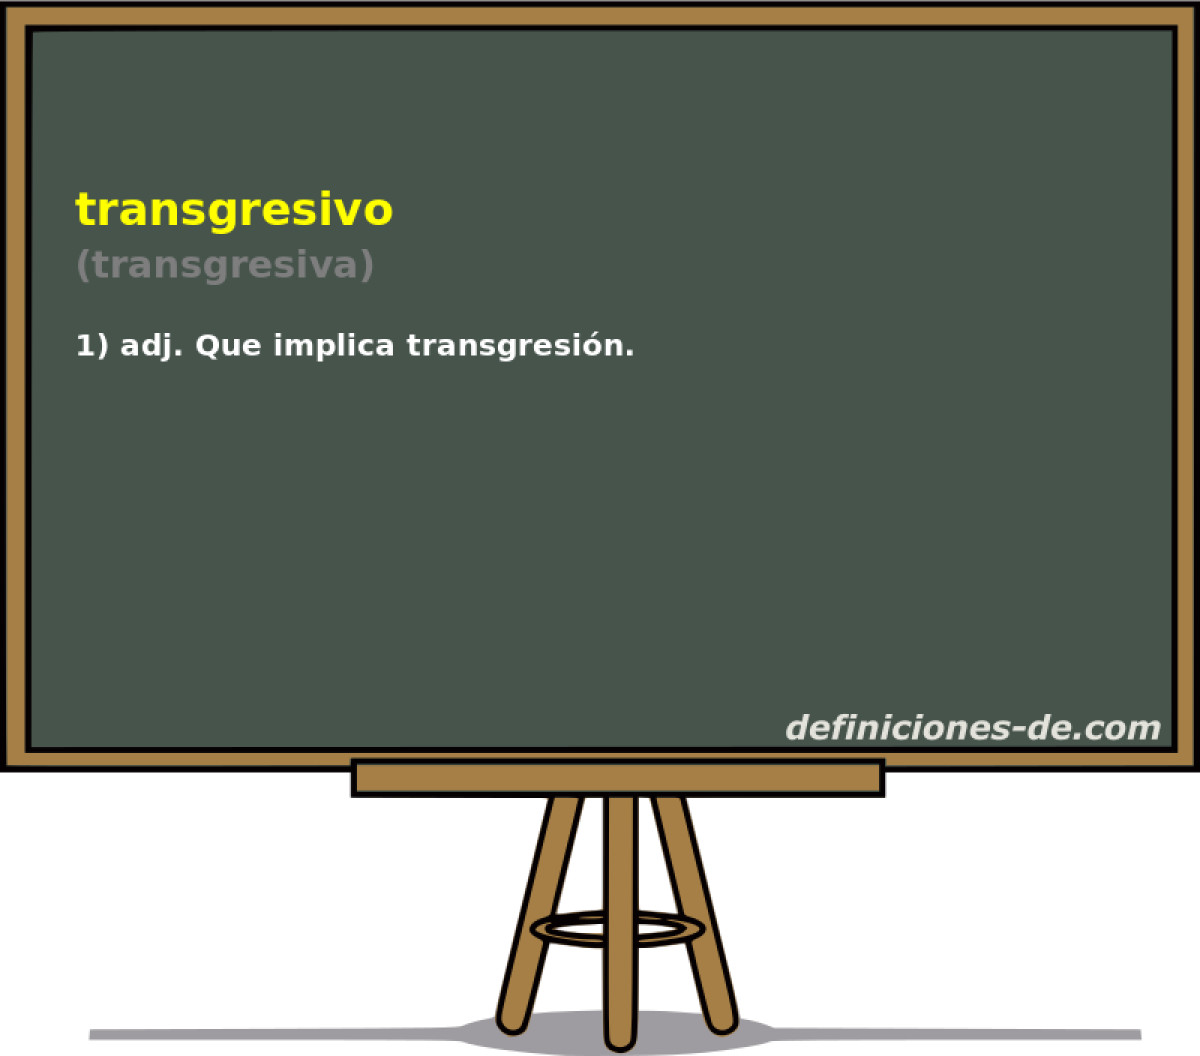 transgresivo (transgresiva)